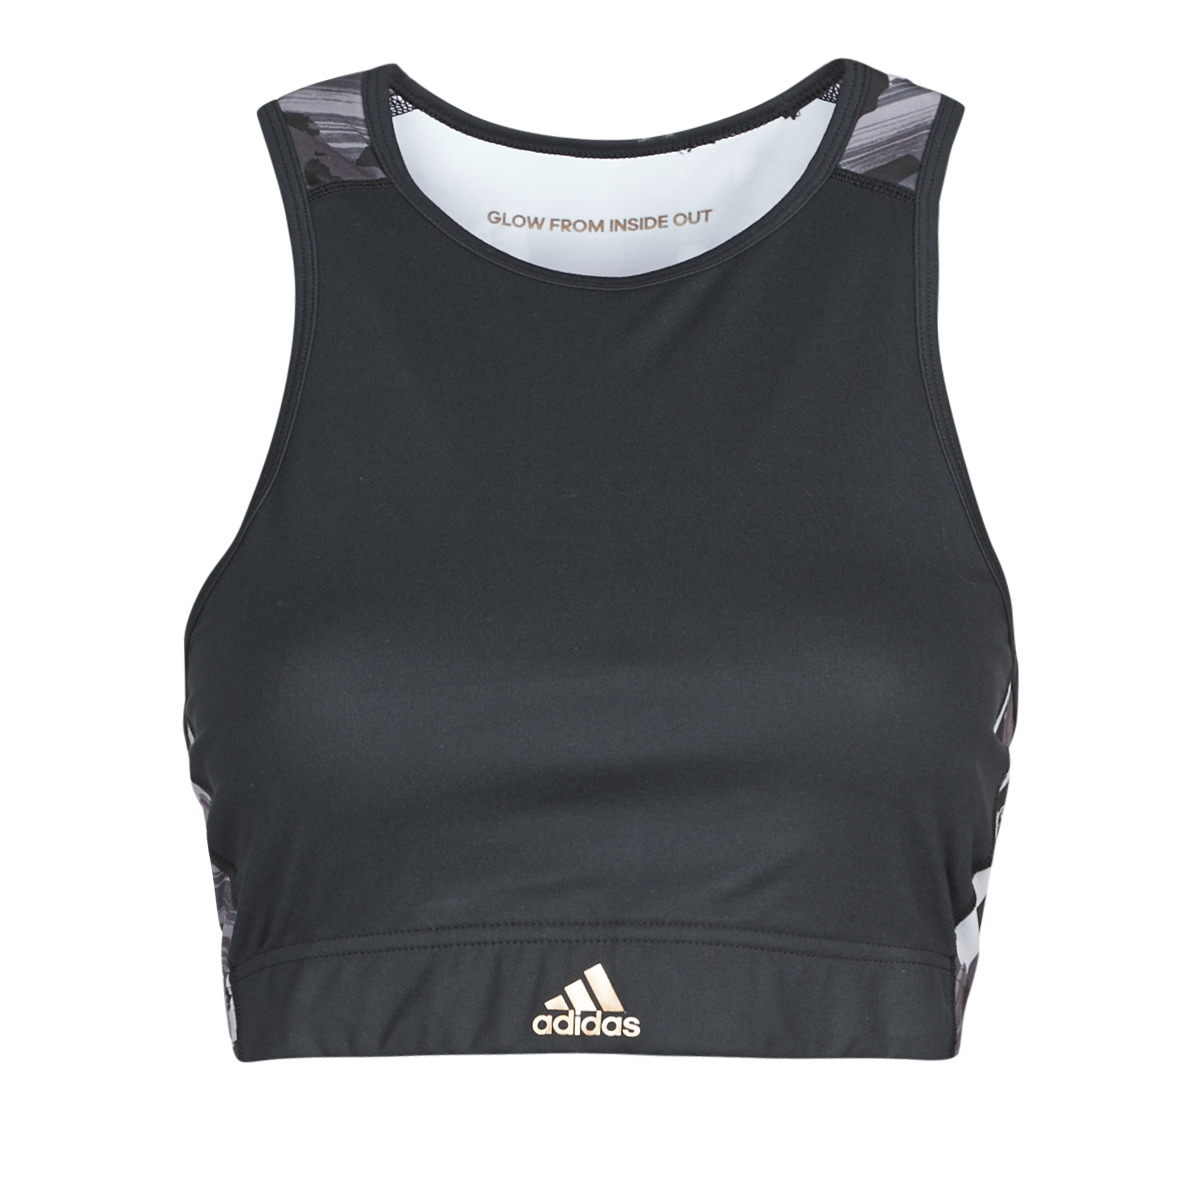 Топ Adidas Black/Coppmt для женщин, спортивный, GG3427, размер L